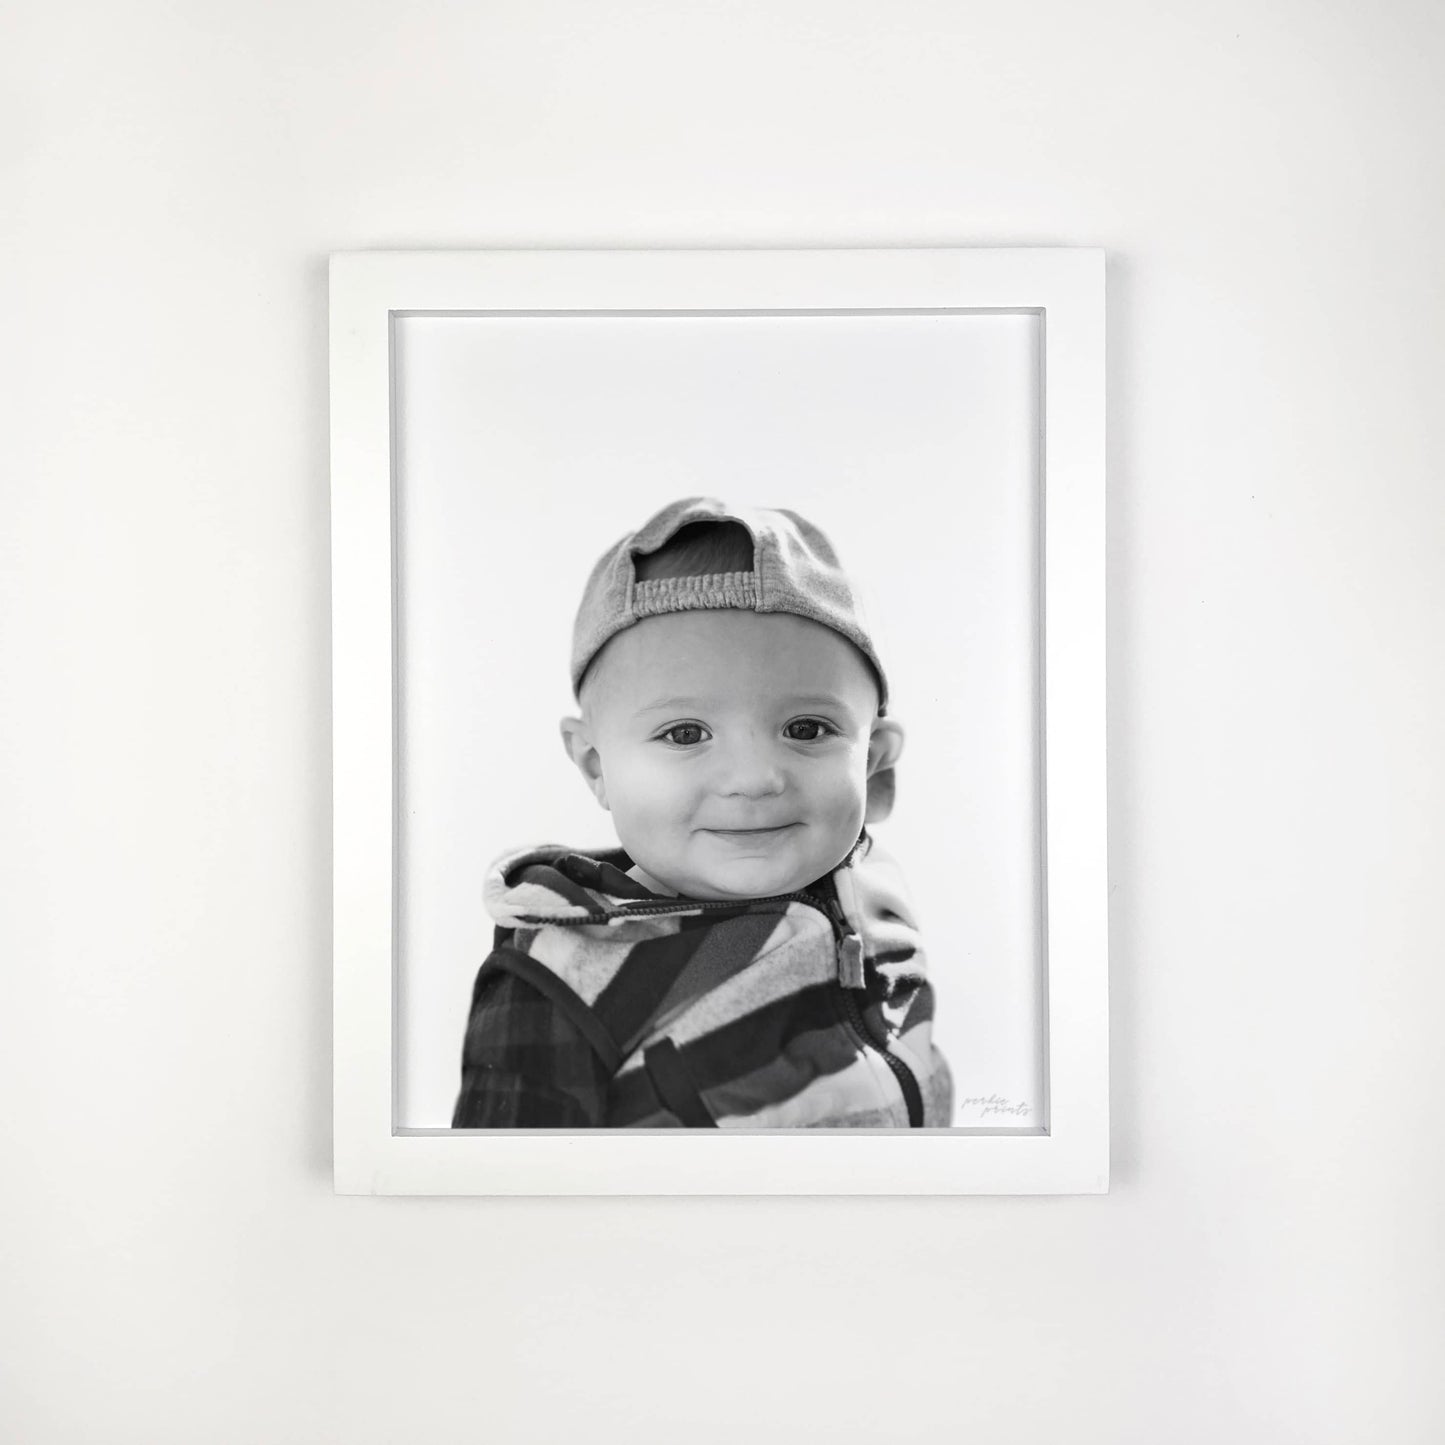 White Frames - Kids & Baby Portraits